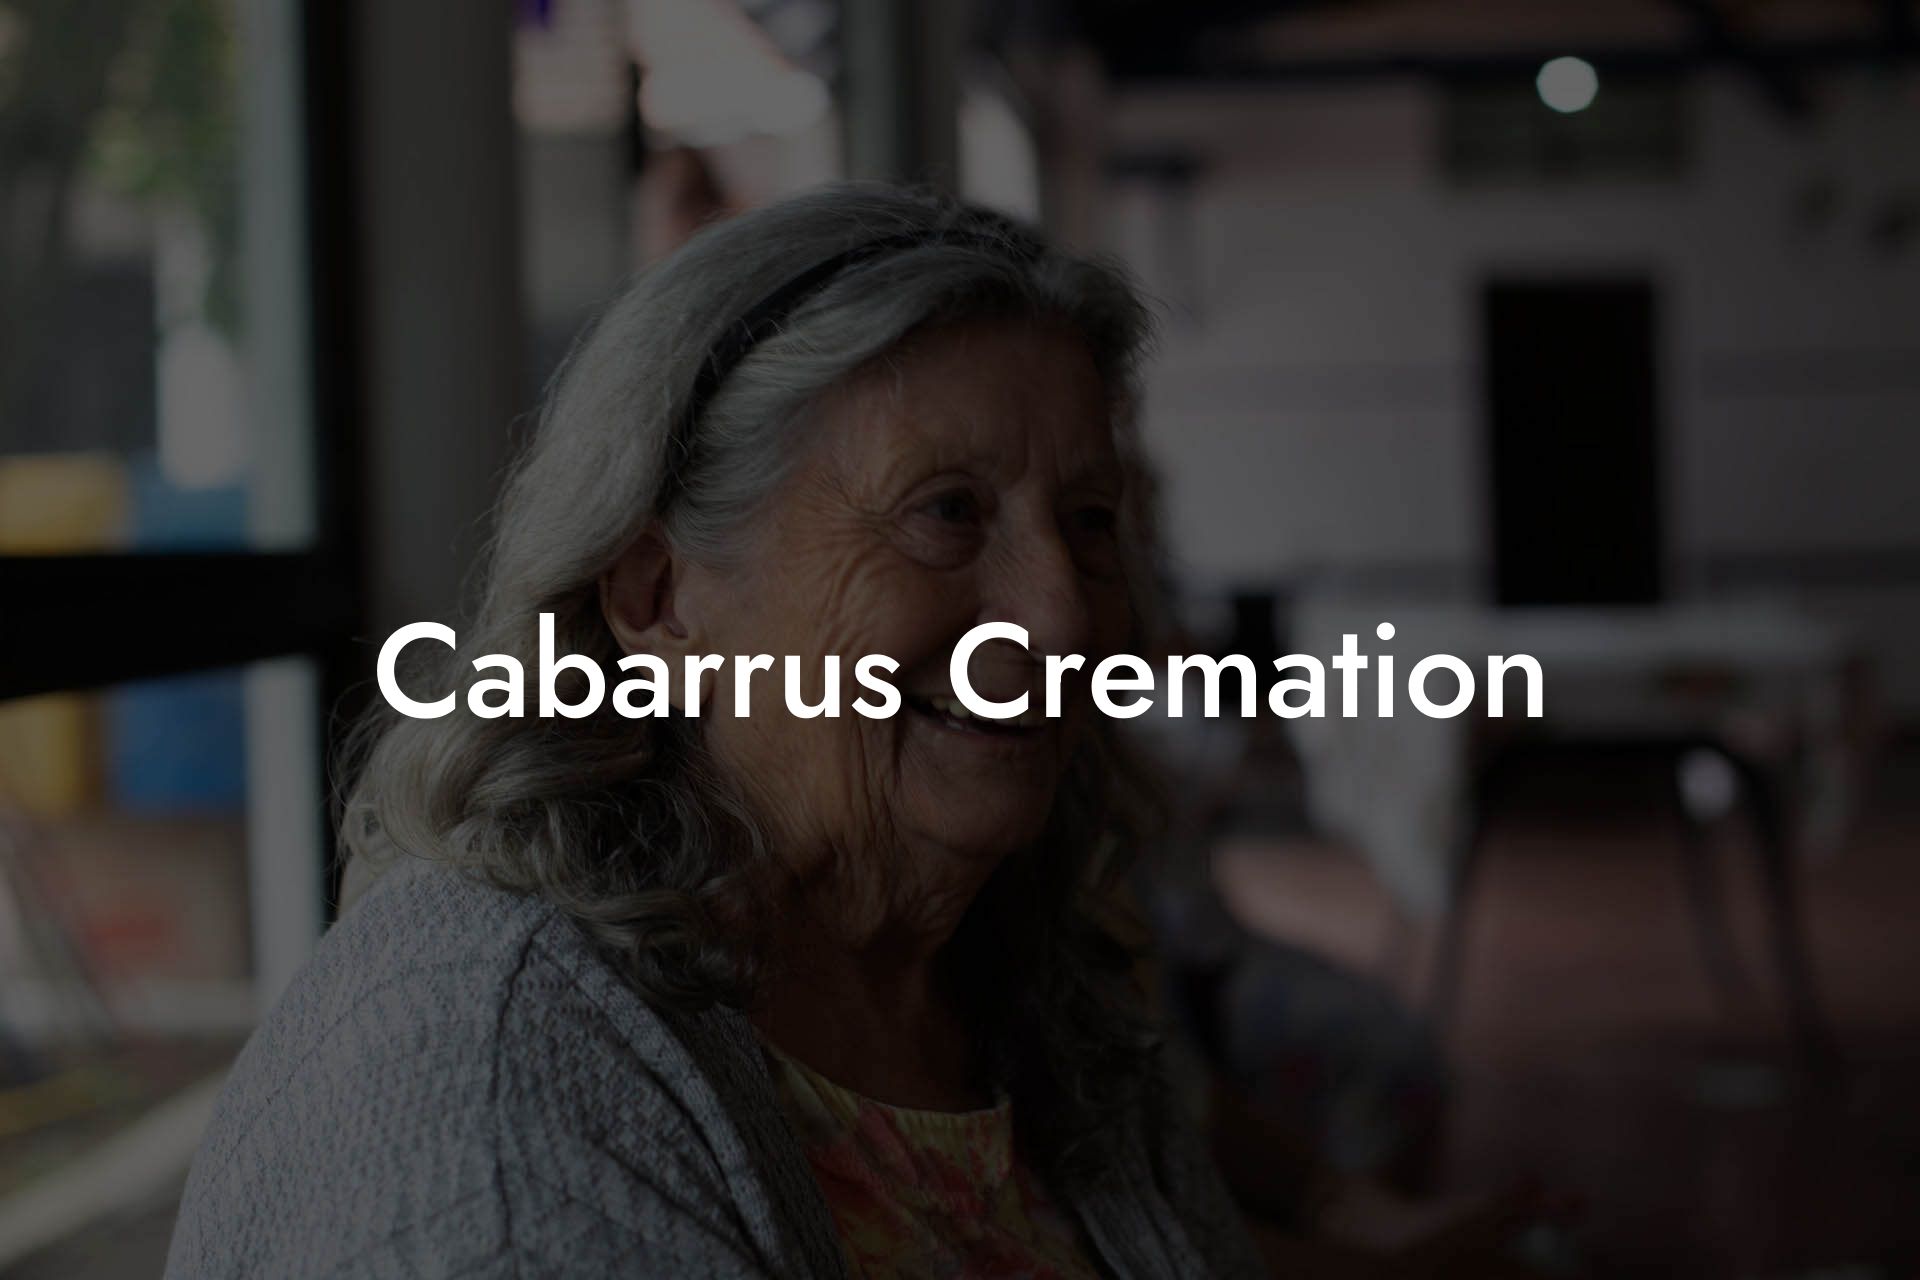 Cabarrus Cremation